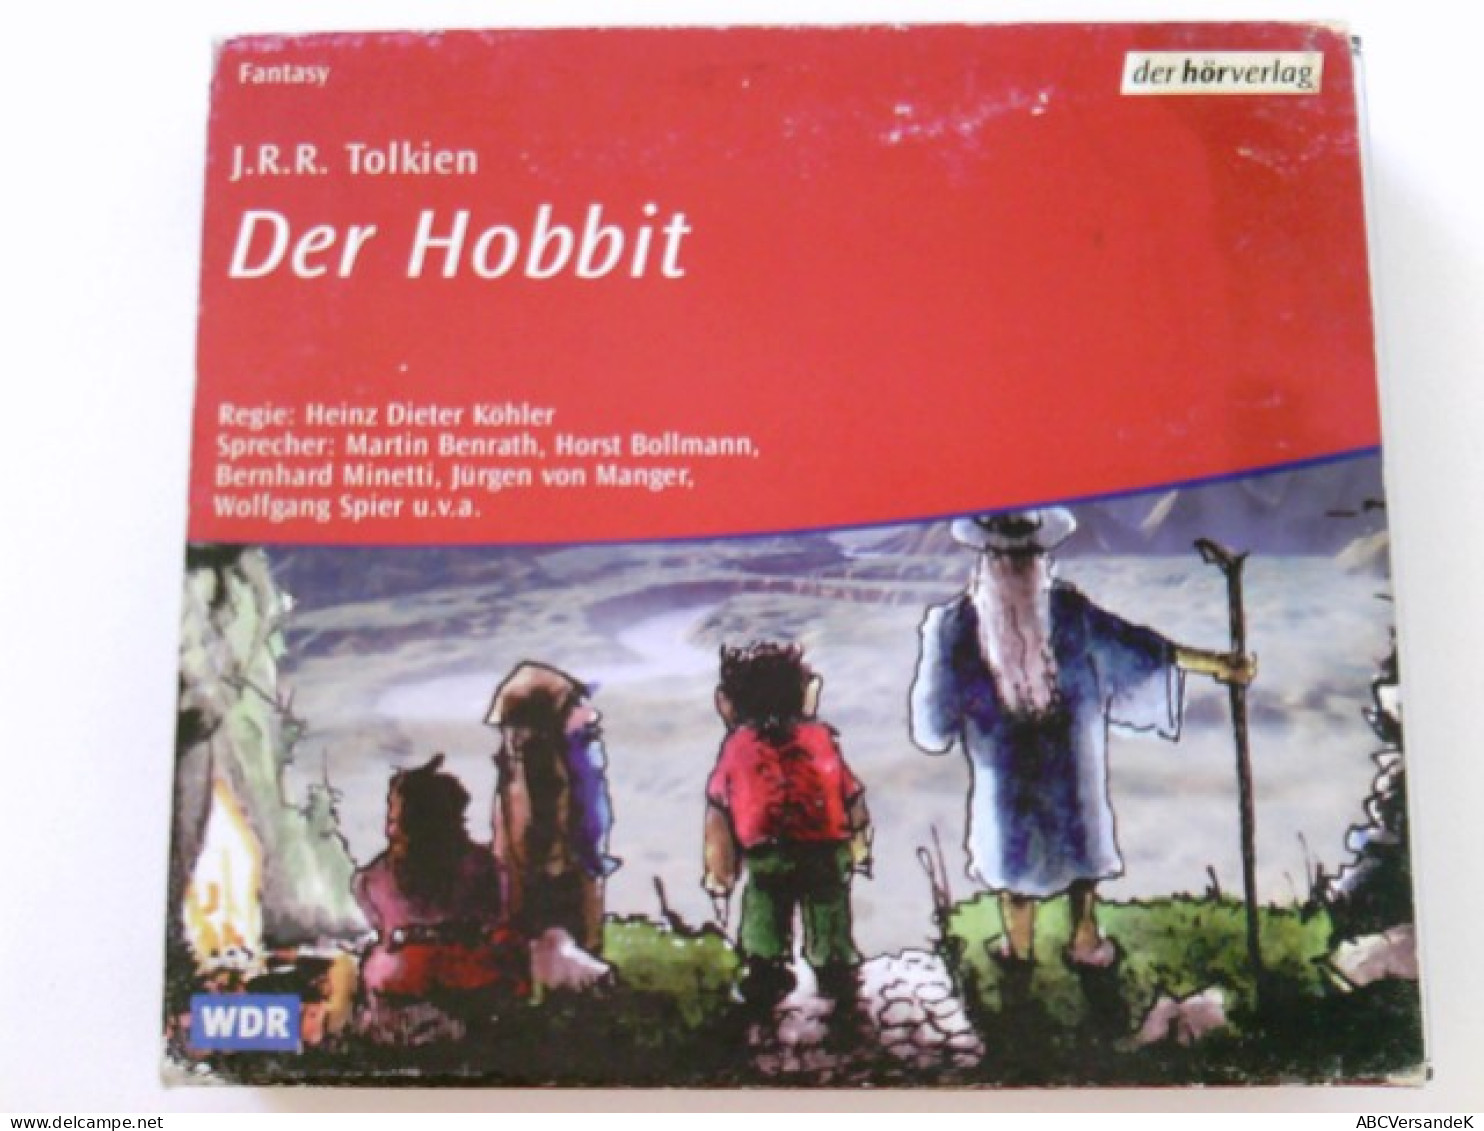 Der Hobbit. Audiobook. 4 CDs. - CDs